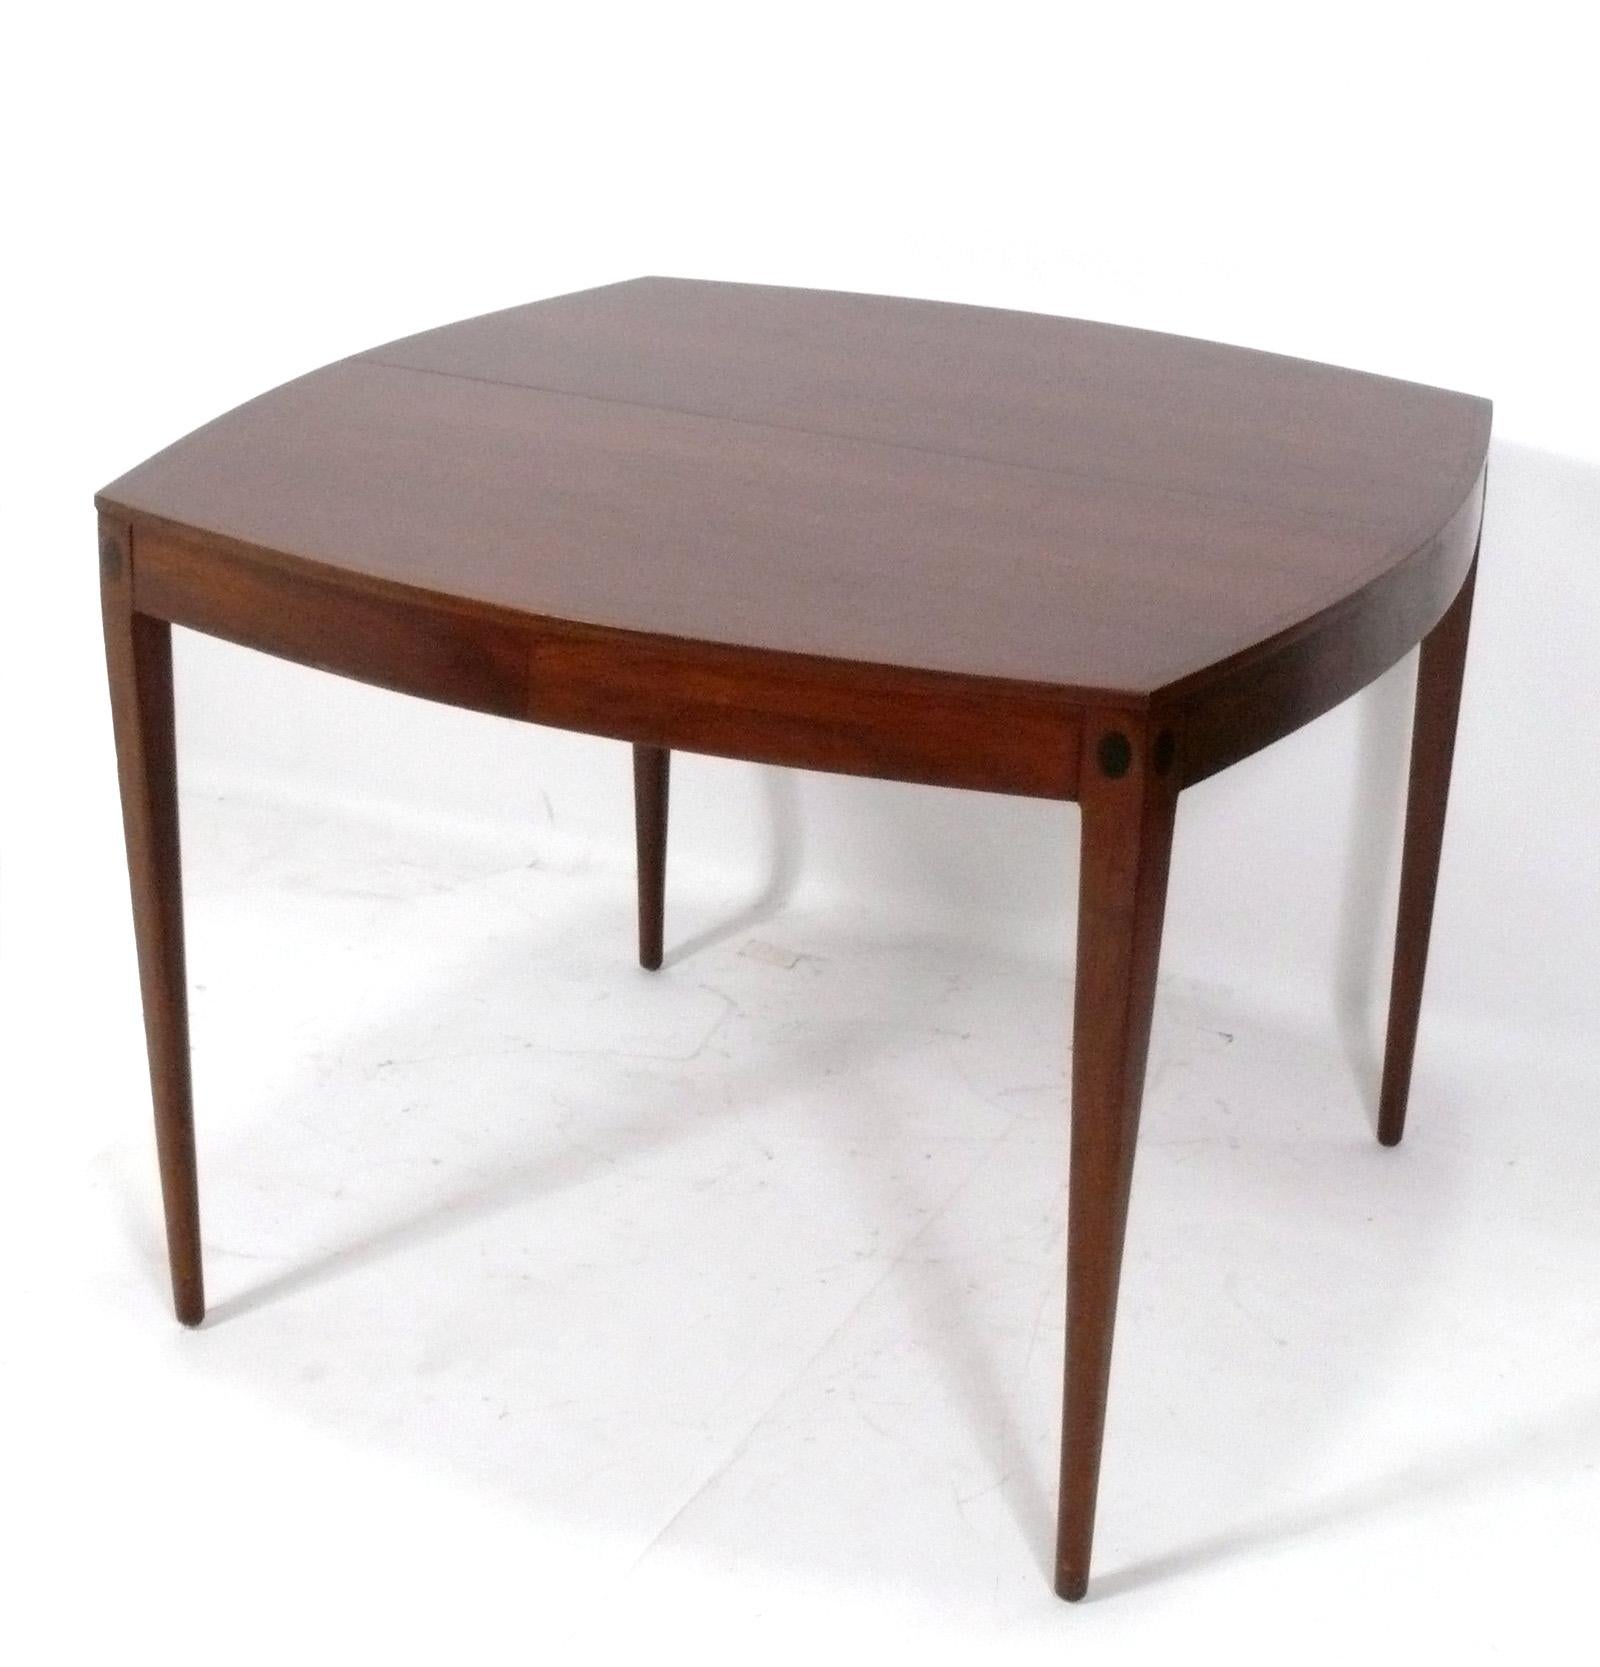 Hervorragender Esstisch aus Nussbaumholz aus der Mitte des Jahrhunderts, entworfen von Kipp Stewart für Directional, amerikanisch, ca. 1960er Jahre. Schönes gemasertes Nussbaumholz im ganzen Haus. Er lässt sich von einem kompakten ovalen Quadrat zu